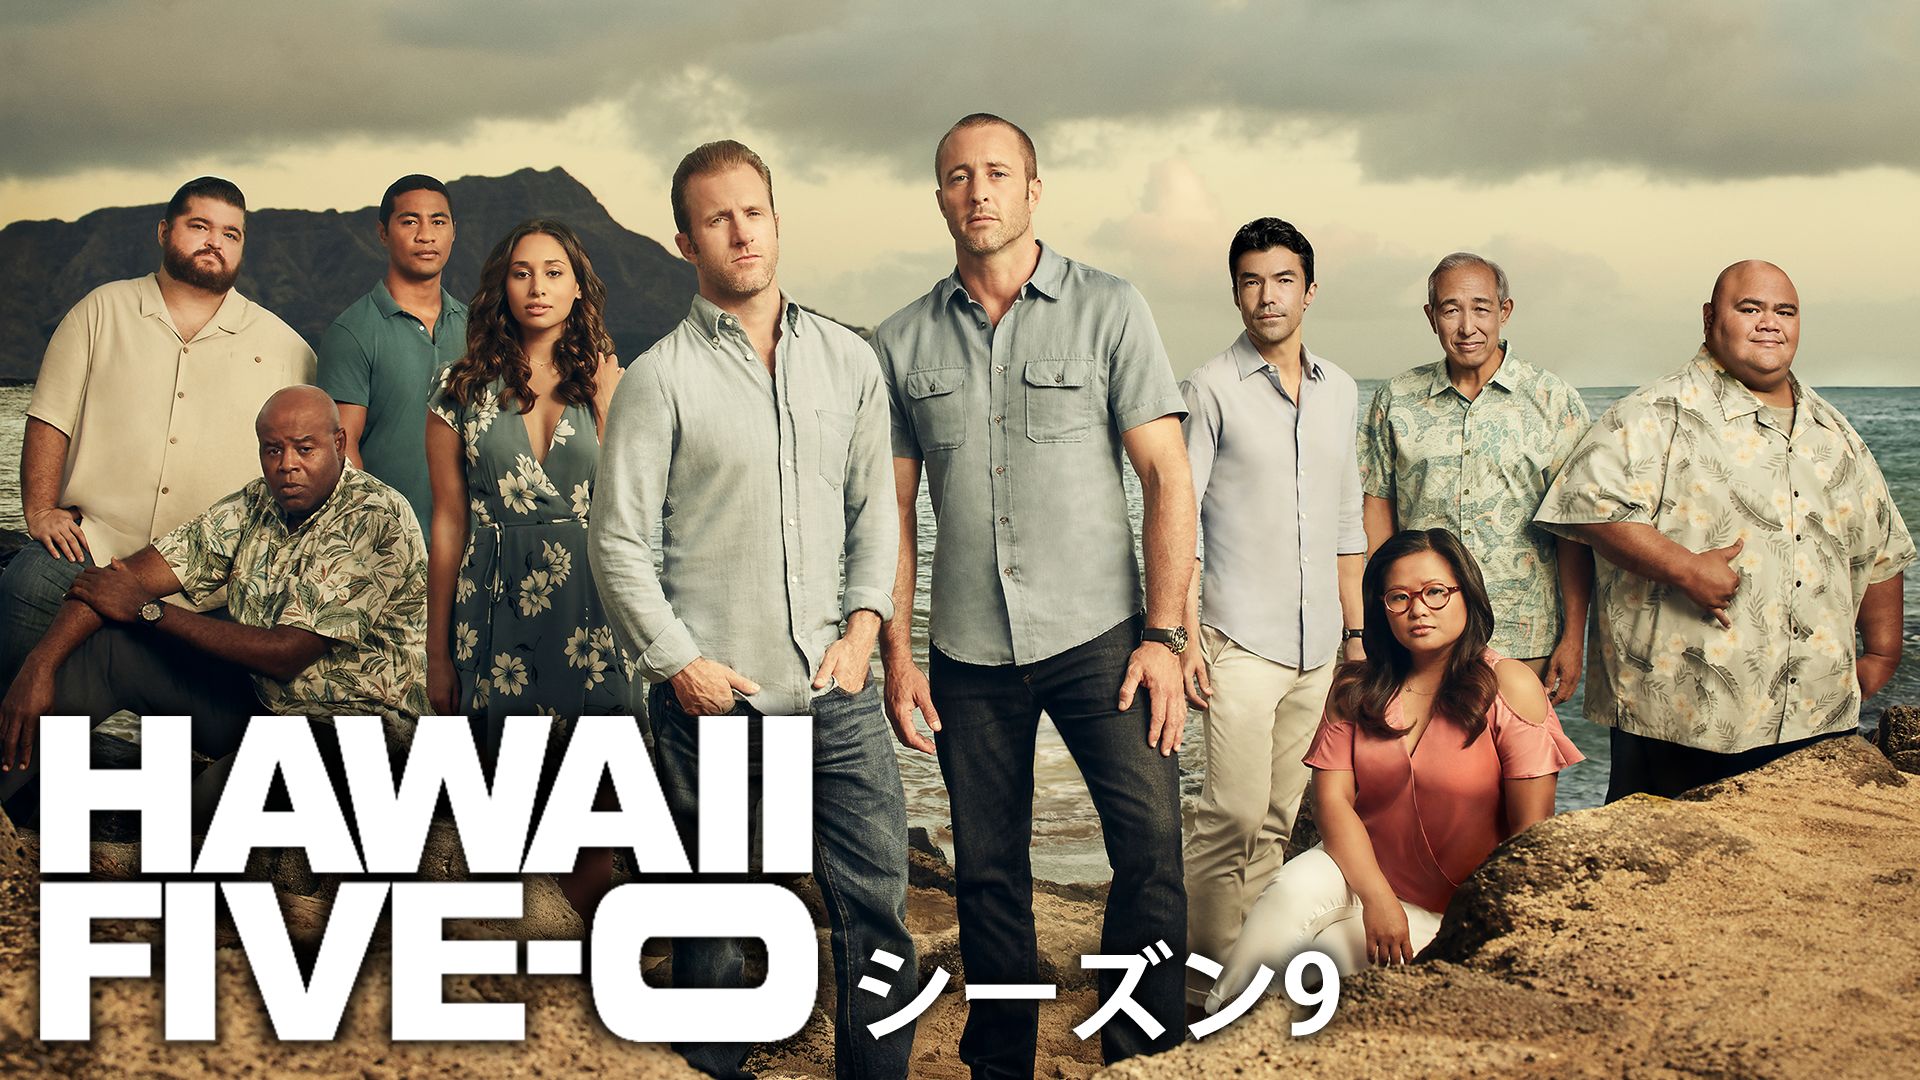 Hawaii Five 0 シーズン9 の海外ドラマ無料動画を全話 1話 最終回 配信しているサービスはここ 日本語吹き替え版 字幕版で見れるのは 動画作品を探すならaukana